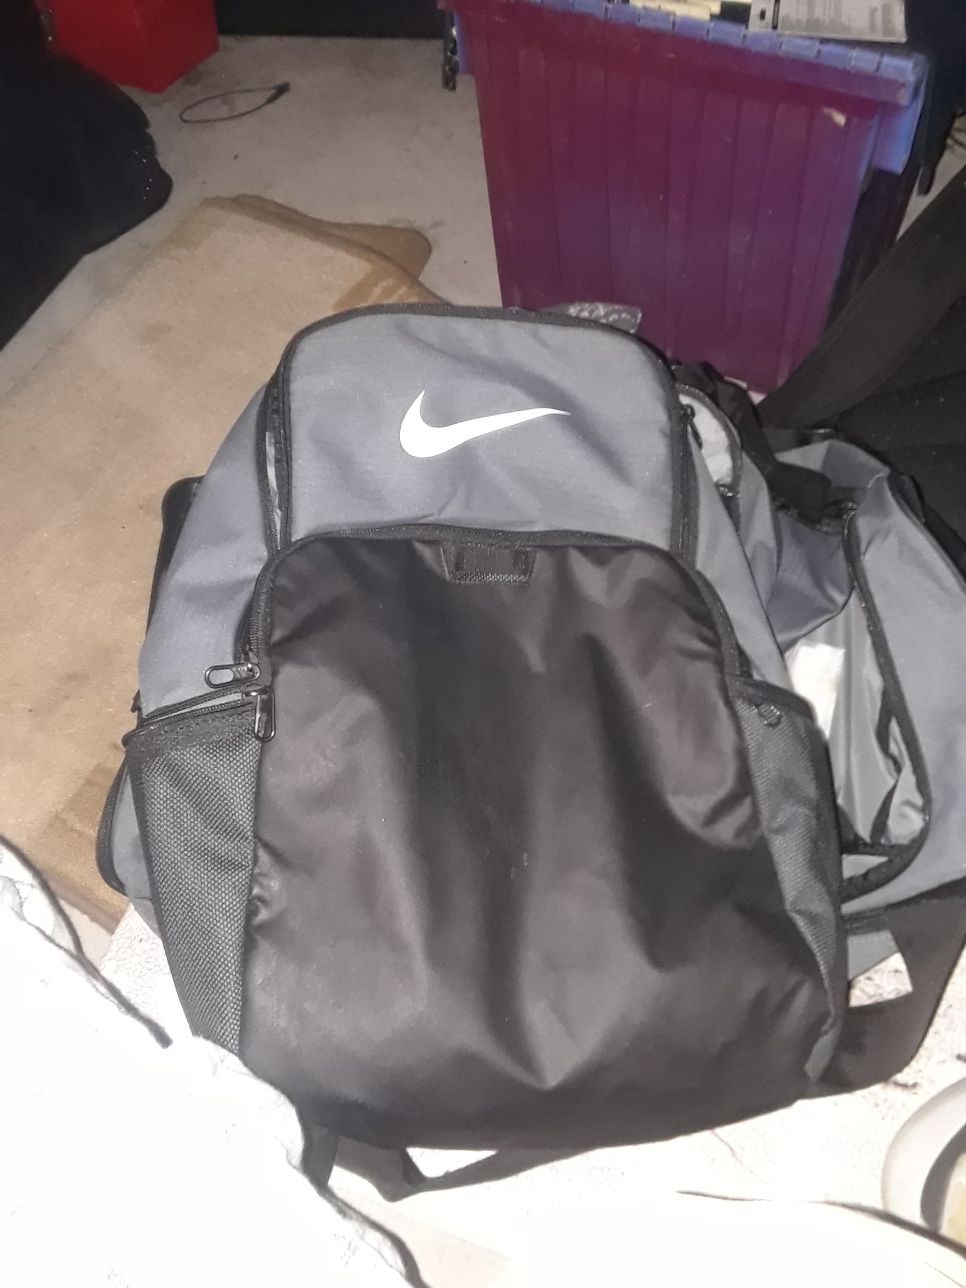 Nike backpack and duffle bag